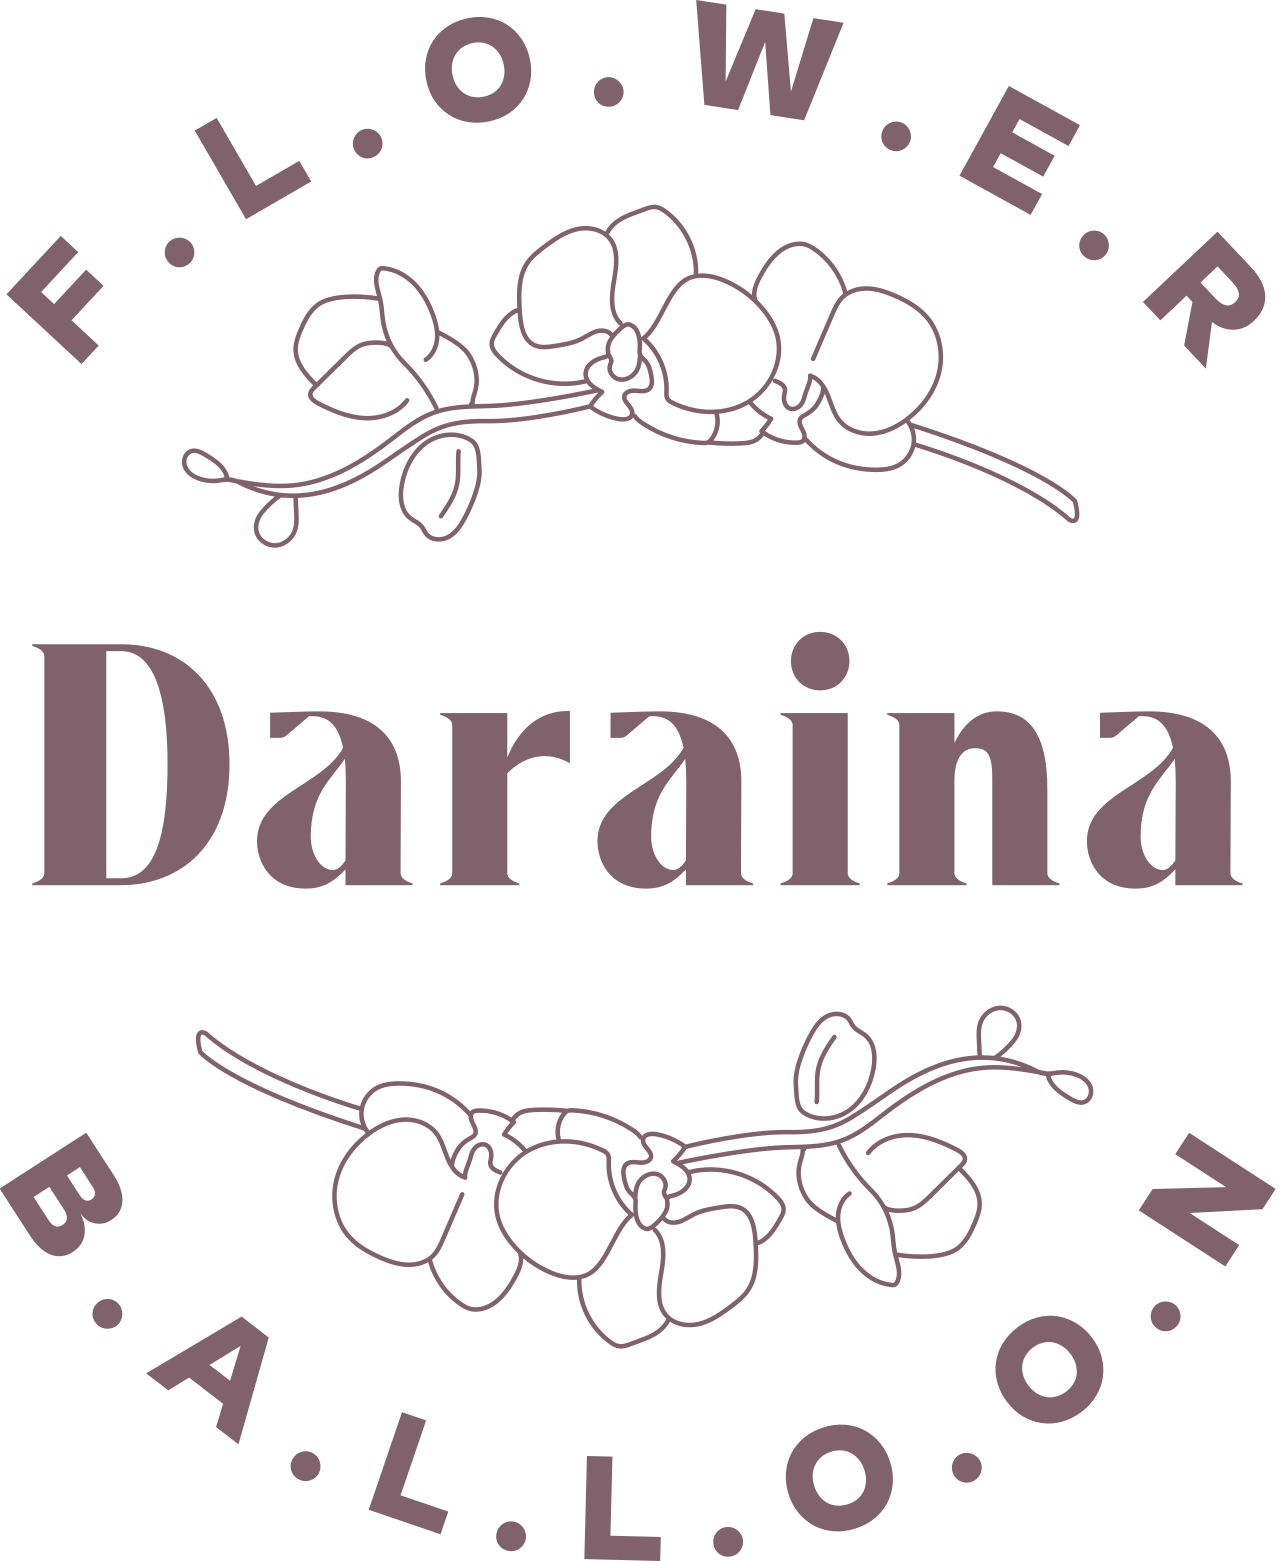 Daraina's logo